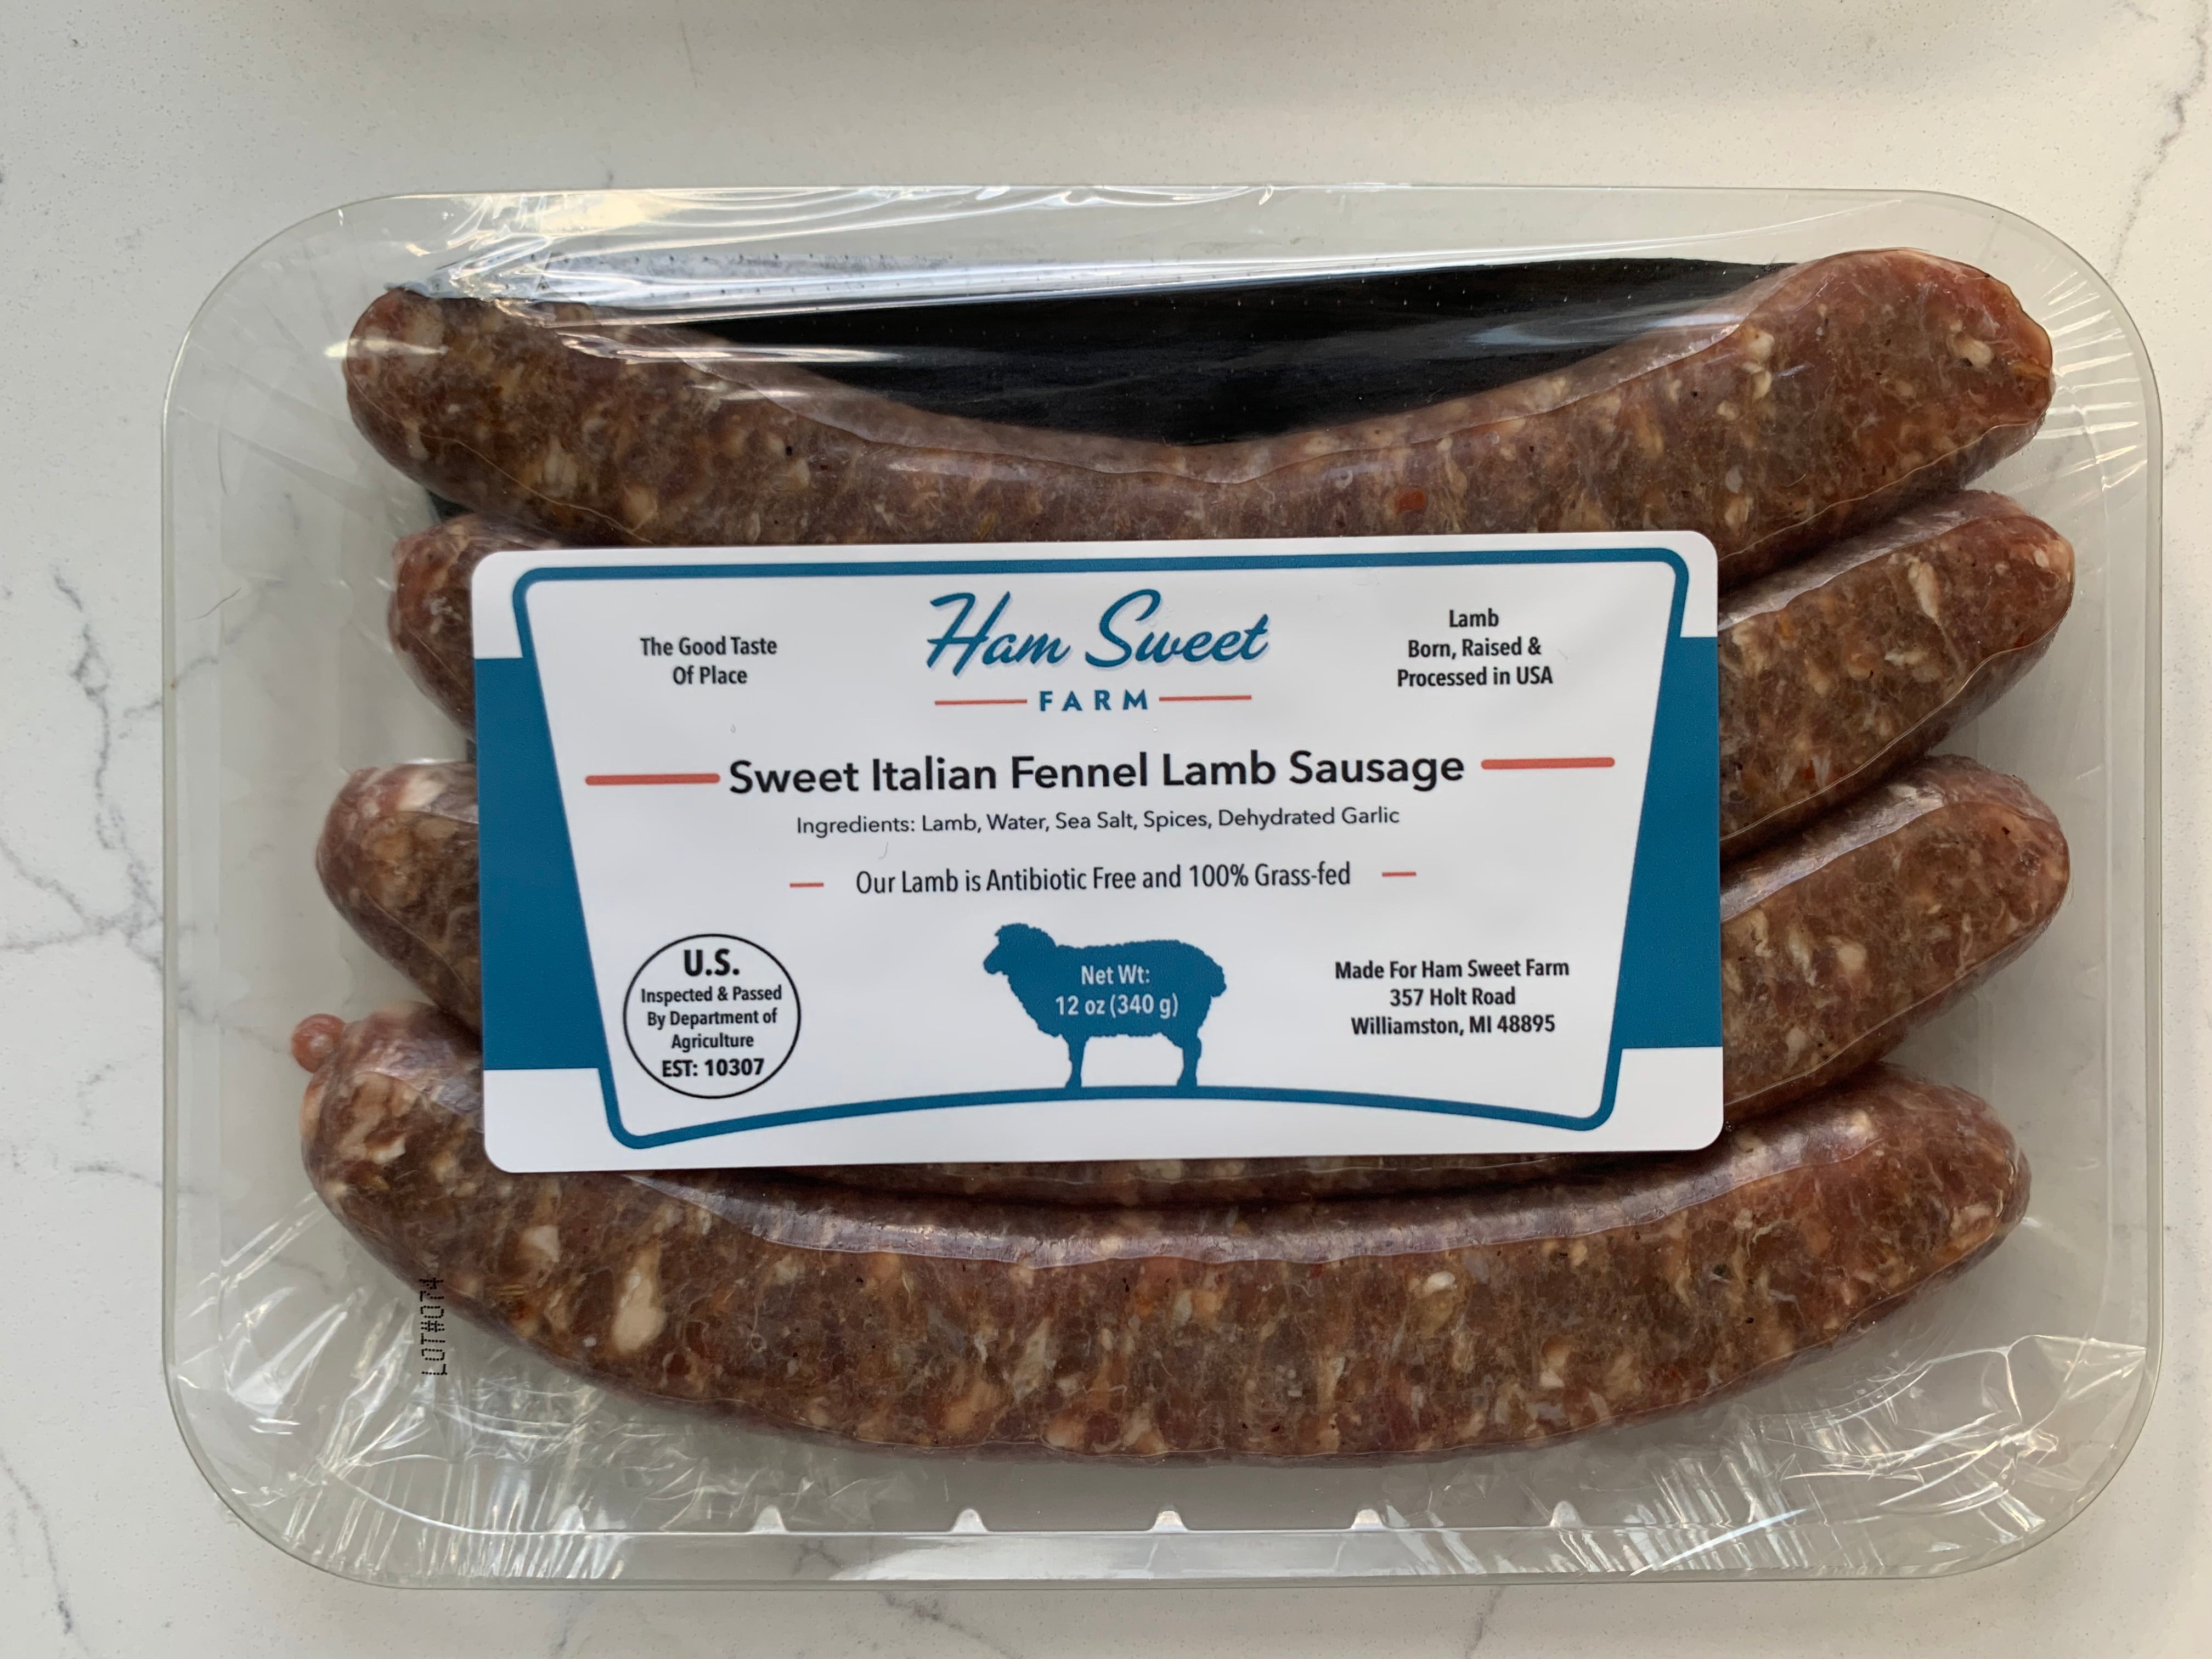 Sweet Italian Fennel Lamb Sausage - 4 x 12 oz Packs